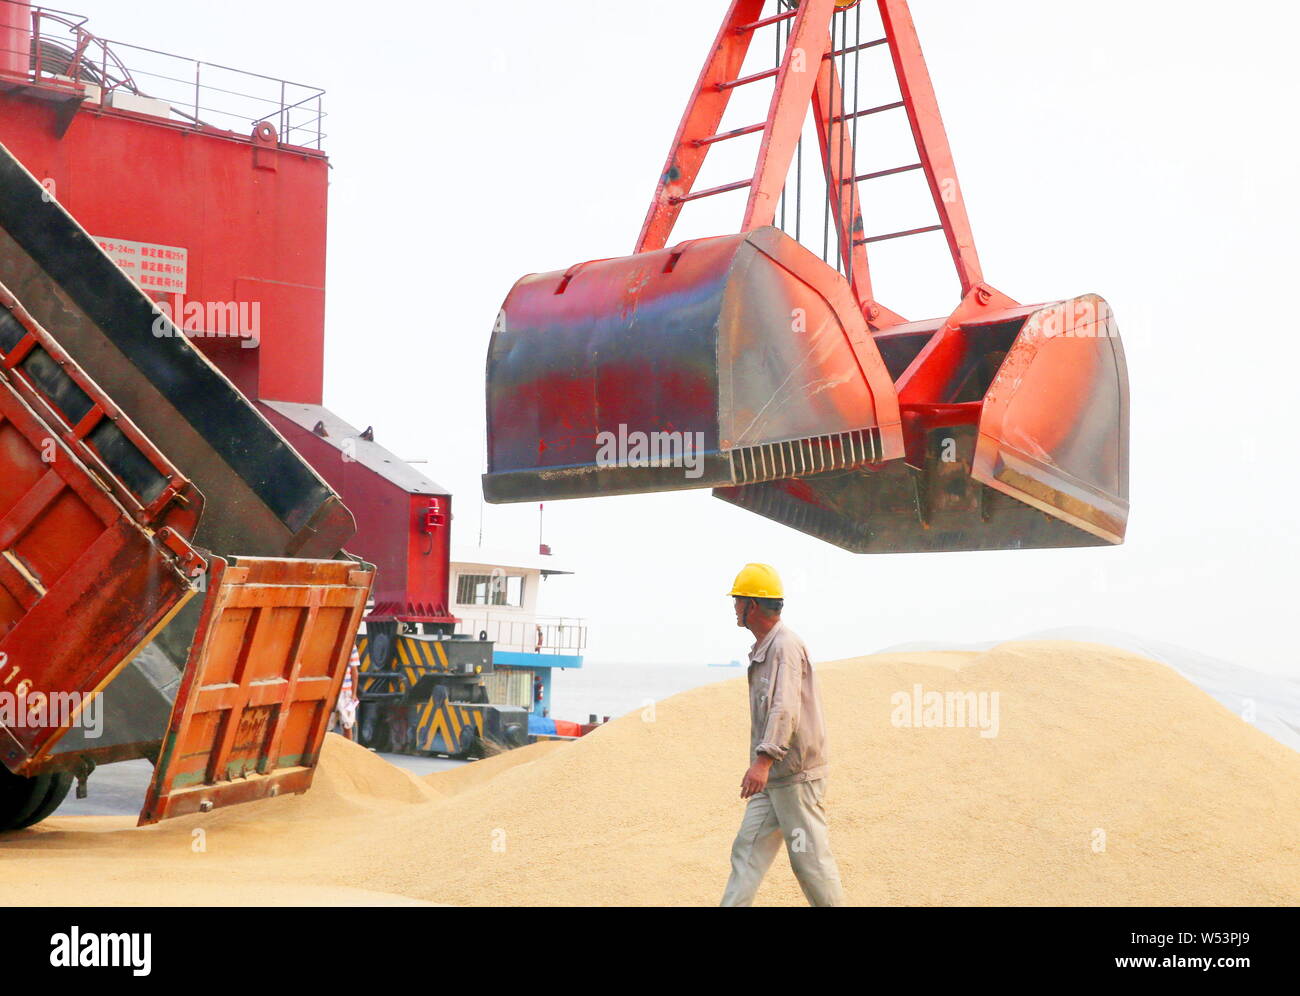 ------ Kran Fahrzeug Lasten eingeführten Sojabohnen auf eine Ladung Boot im Hafen von Nantong in Nantong City, East China Jiangsu Provinz, am 6. August 2018. Stockfoto